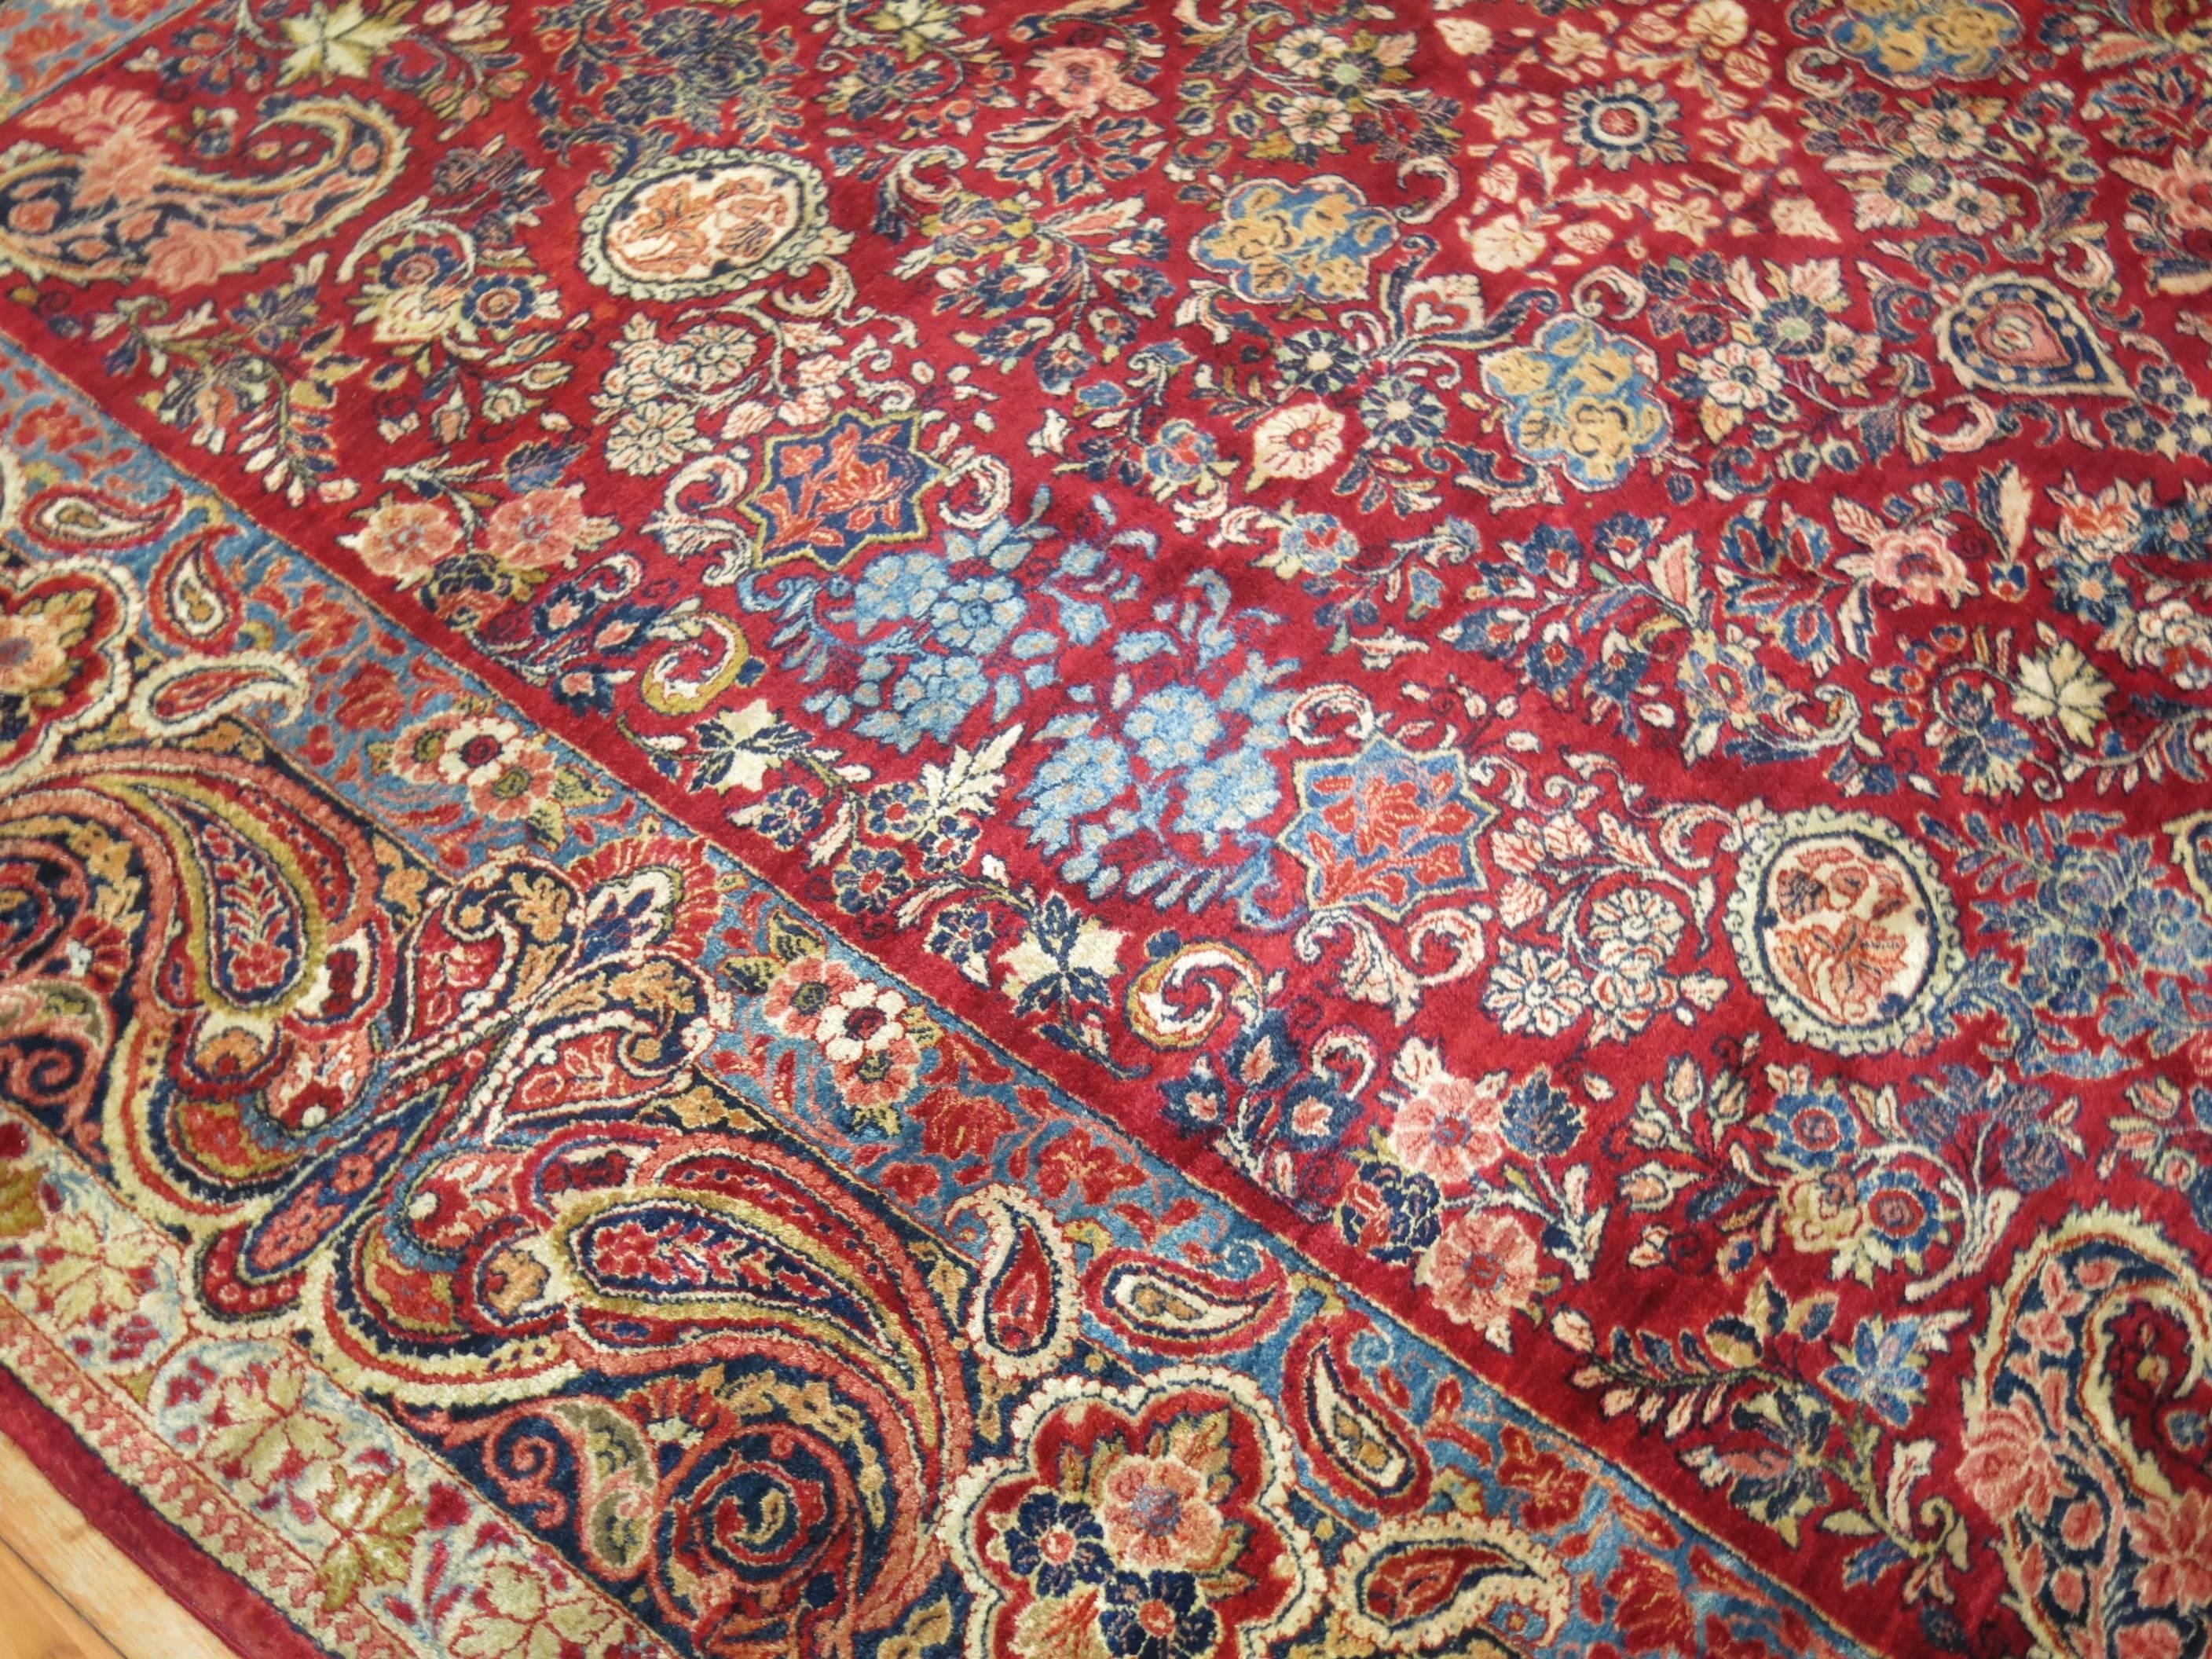 Eine seltene Größe frühen 20. Jahrhundert persischen Sarouk Teppich.

Für eine regionale aristokratische Kundschaft entworfen, entwickelte die Sarouk-Region im westlichen Zentralpersien im 19. Jahrhundert eine ausgeprägte Teppichwebetradition, die